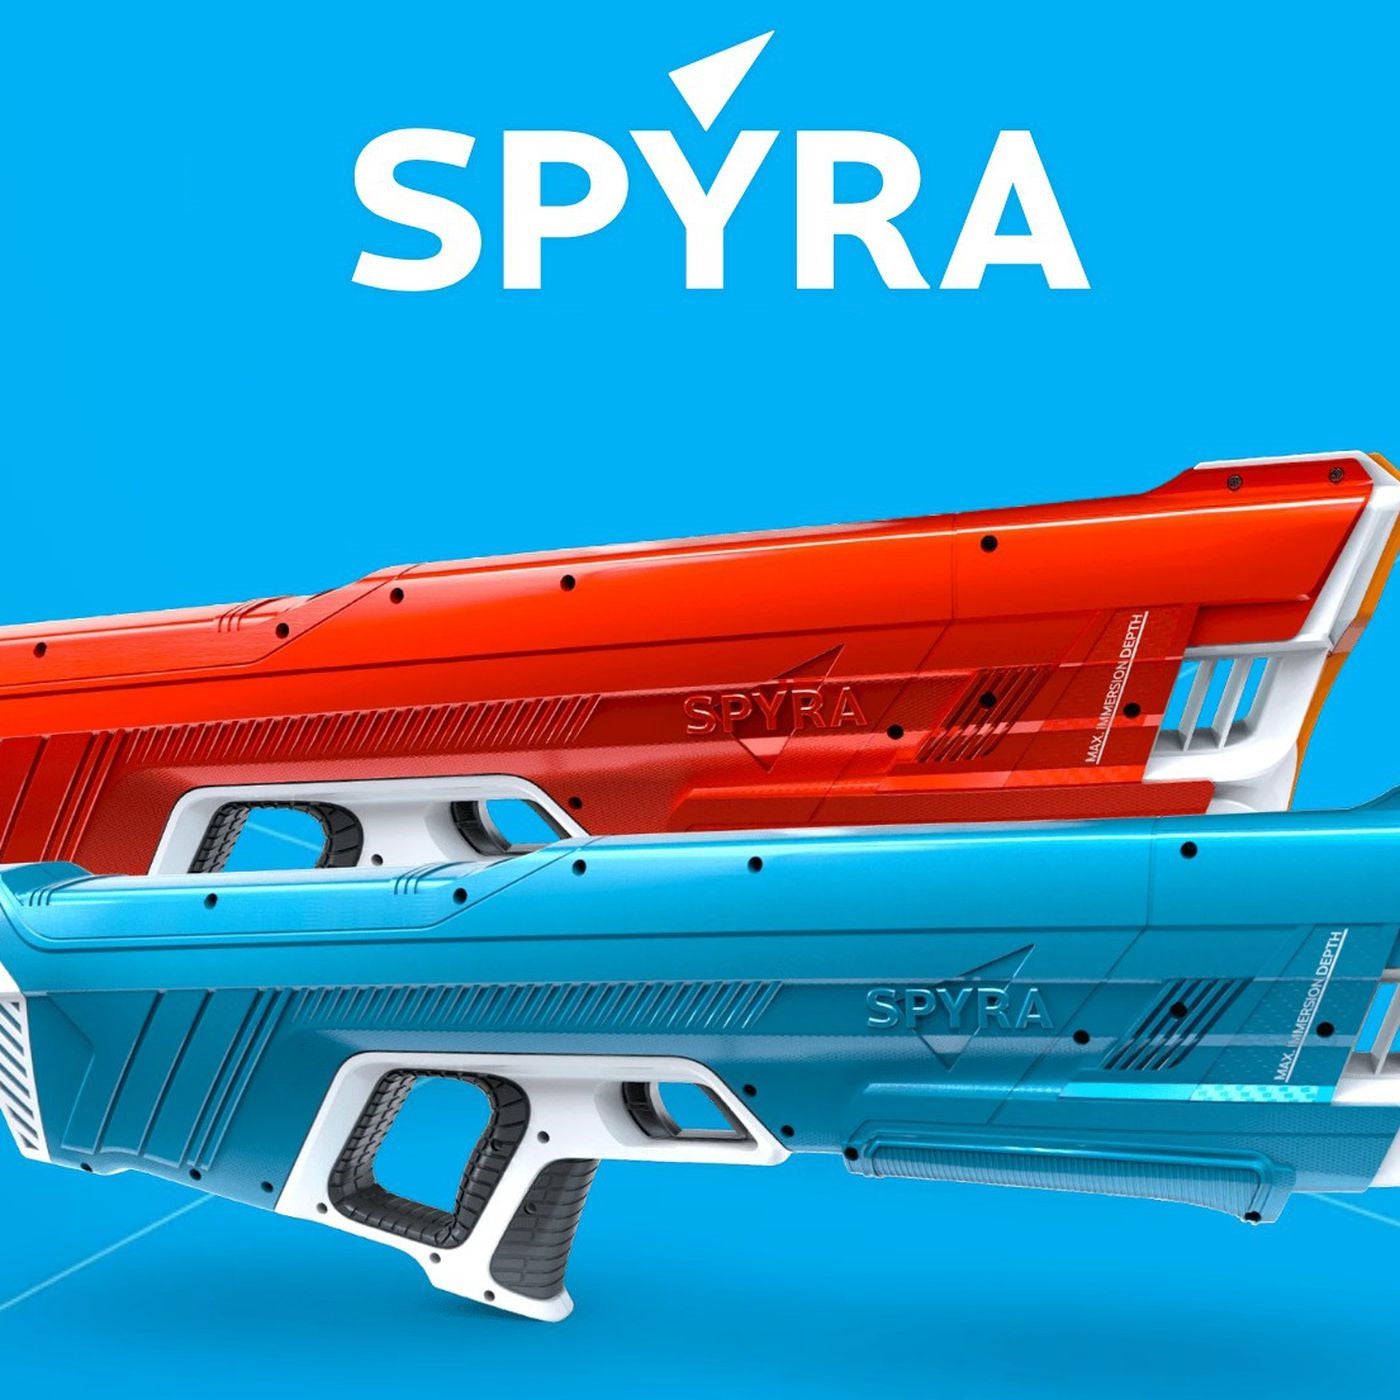 Spyra Two, Pistolet à eau Rouge, Red Team